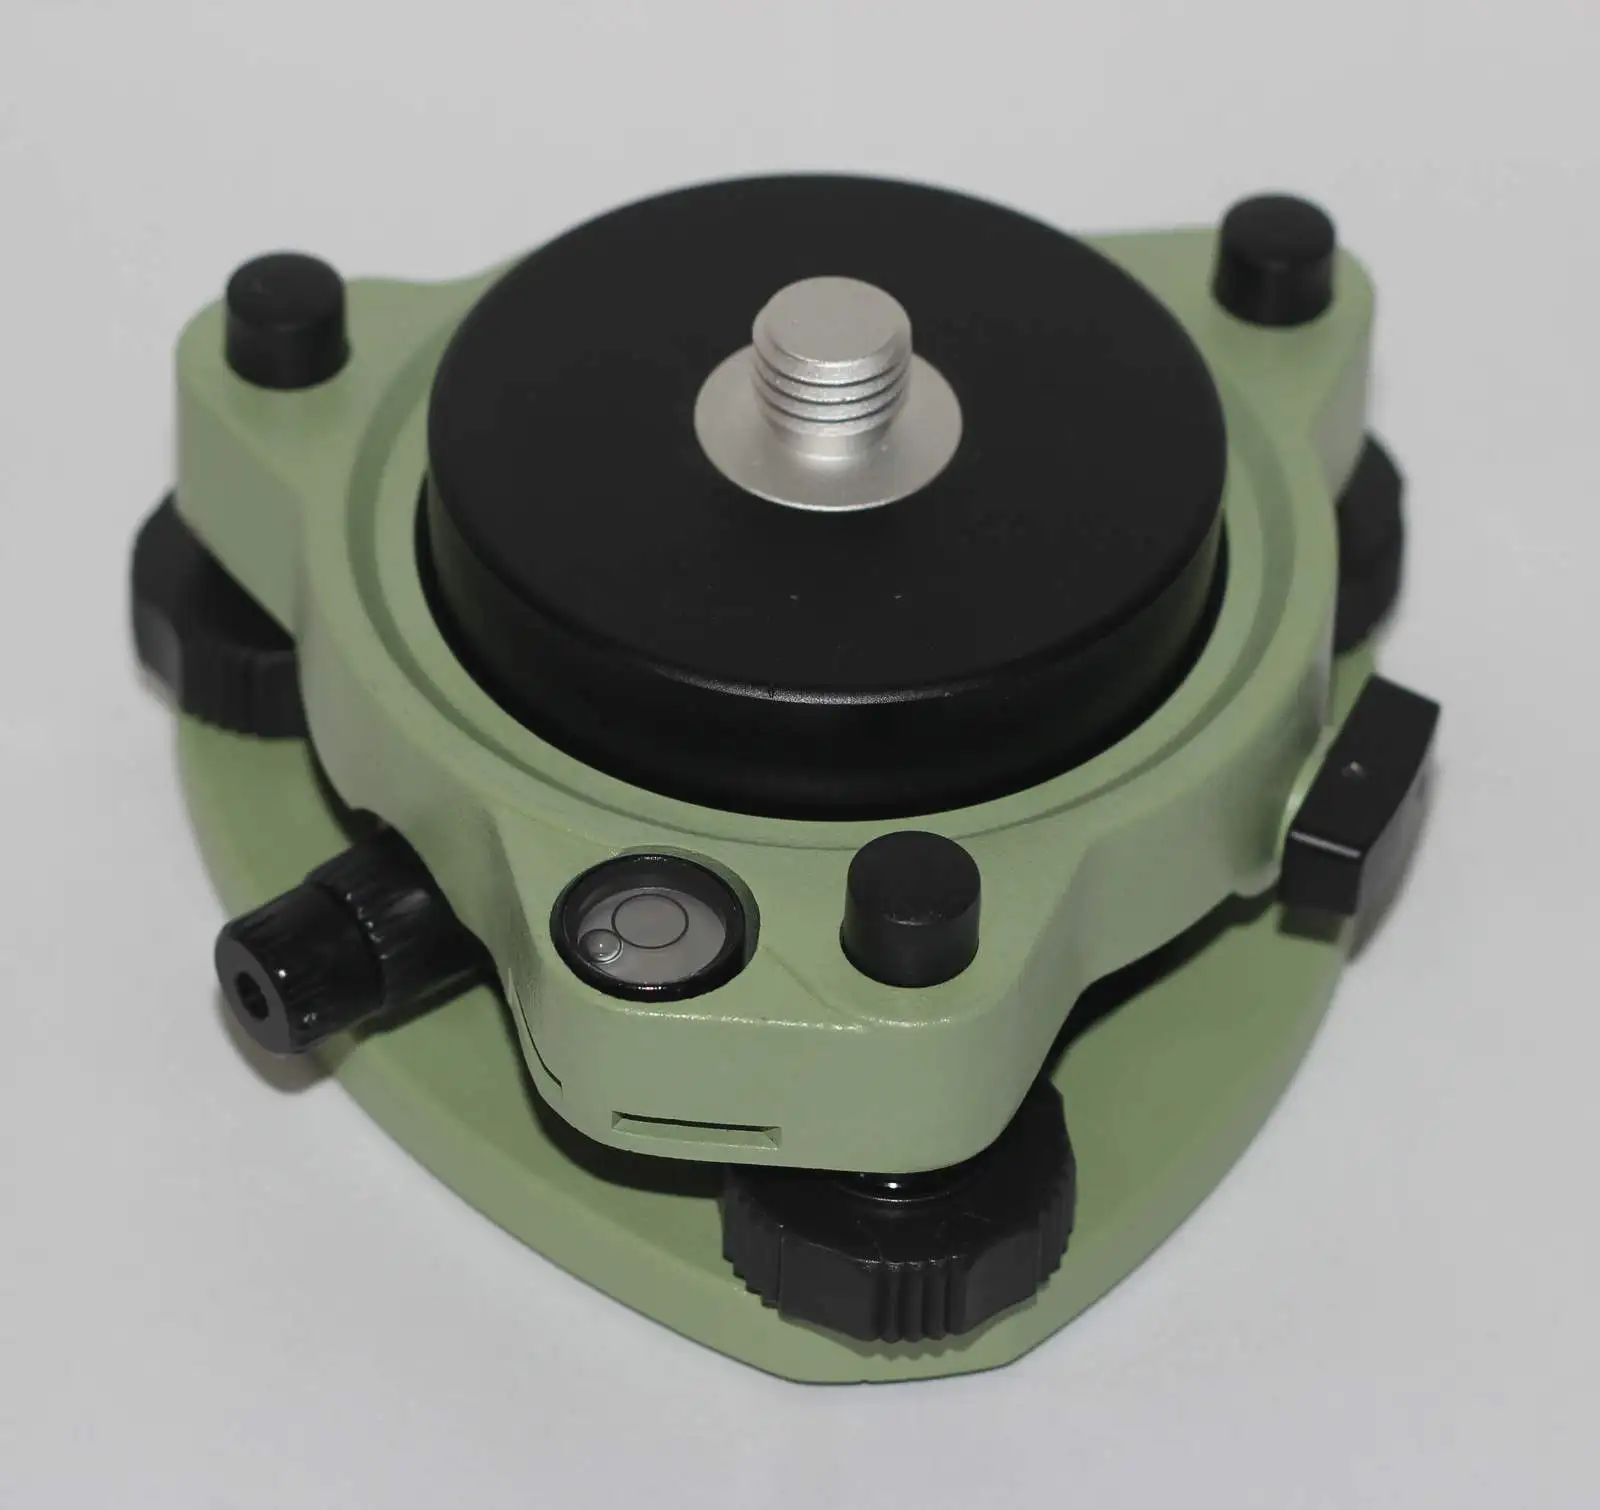 NEW Tribrach w/Optical Plummet & Rotating Adapter 5/8